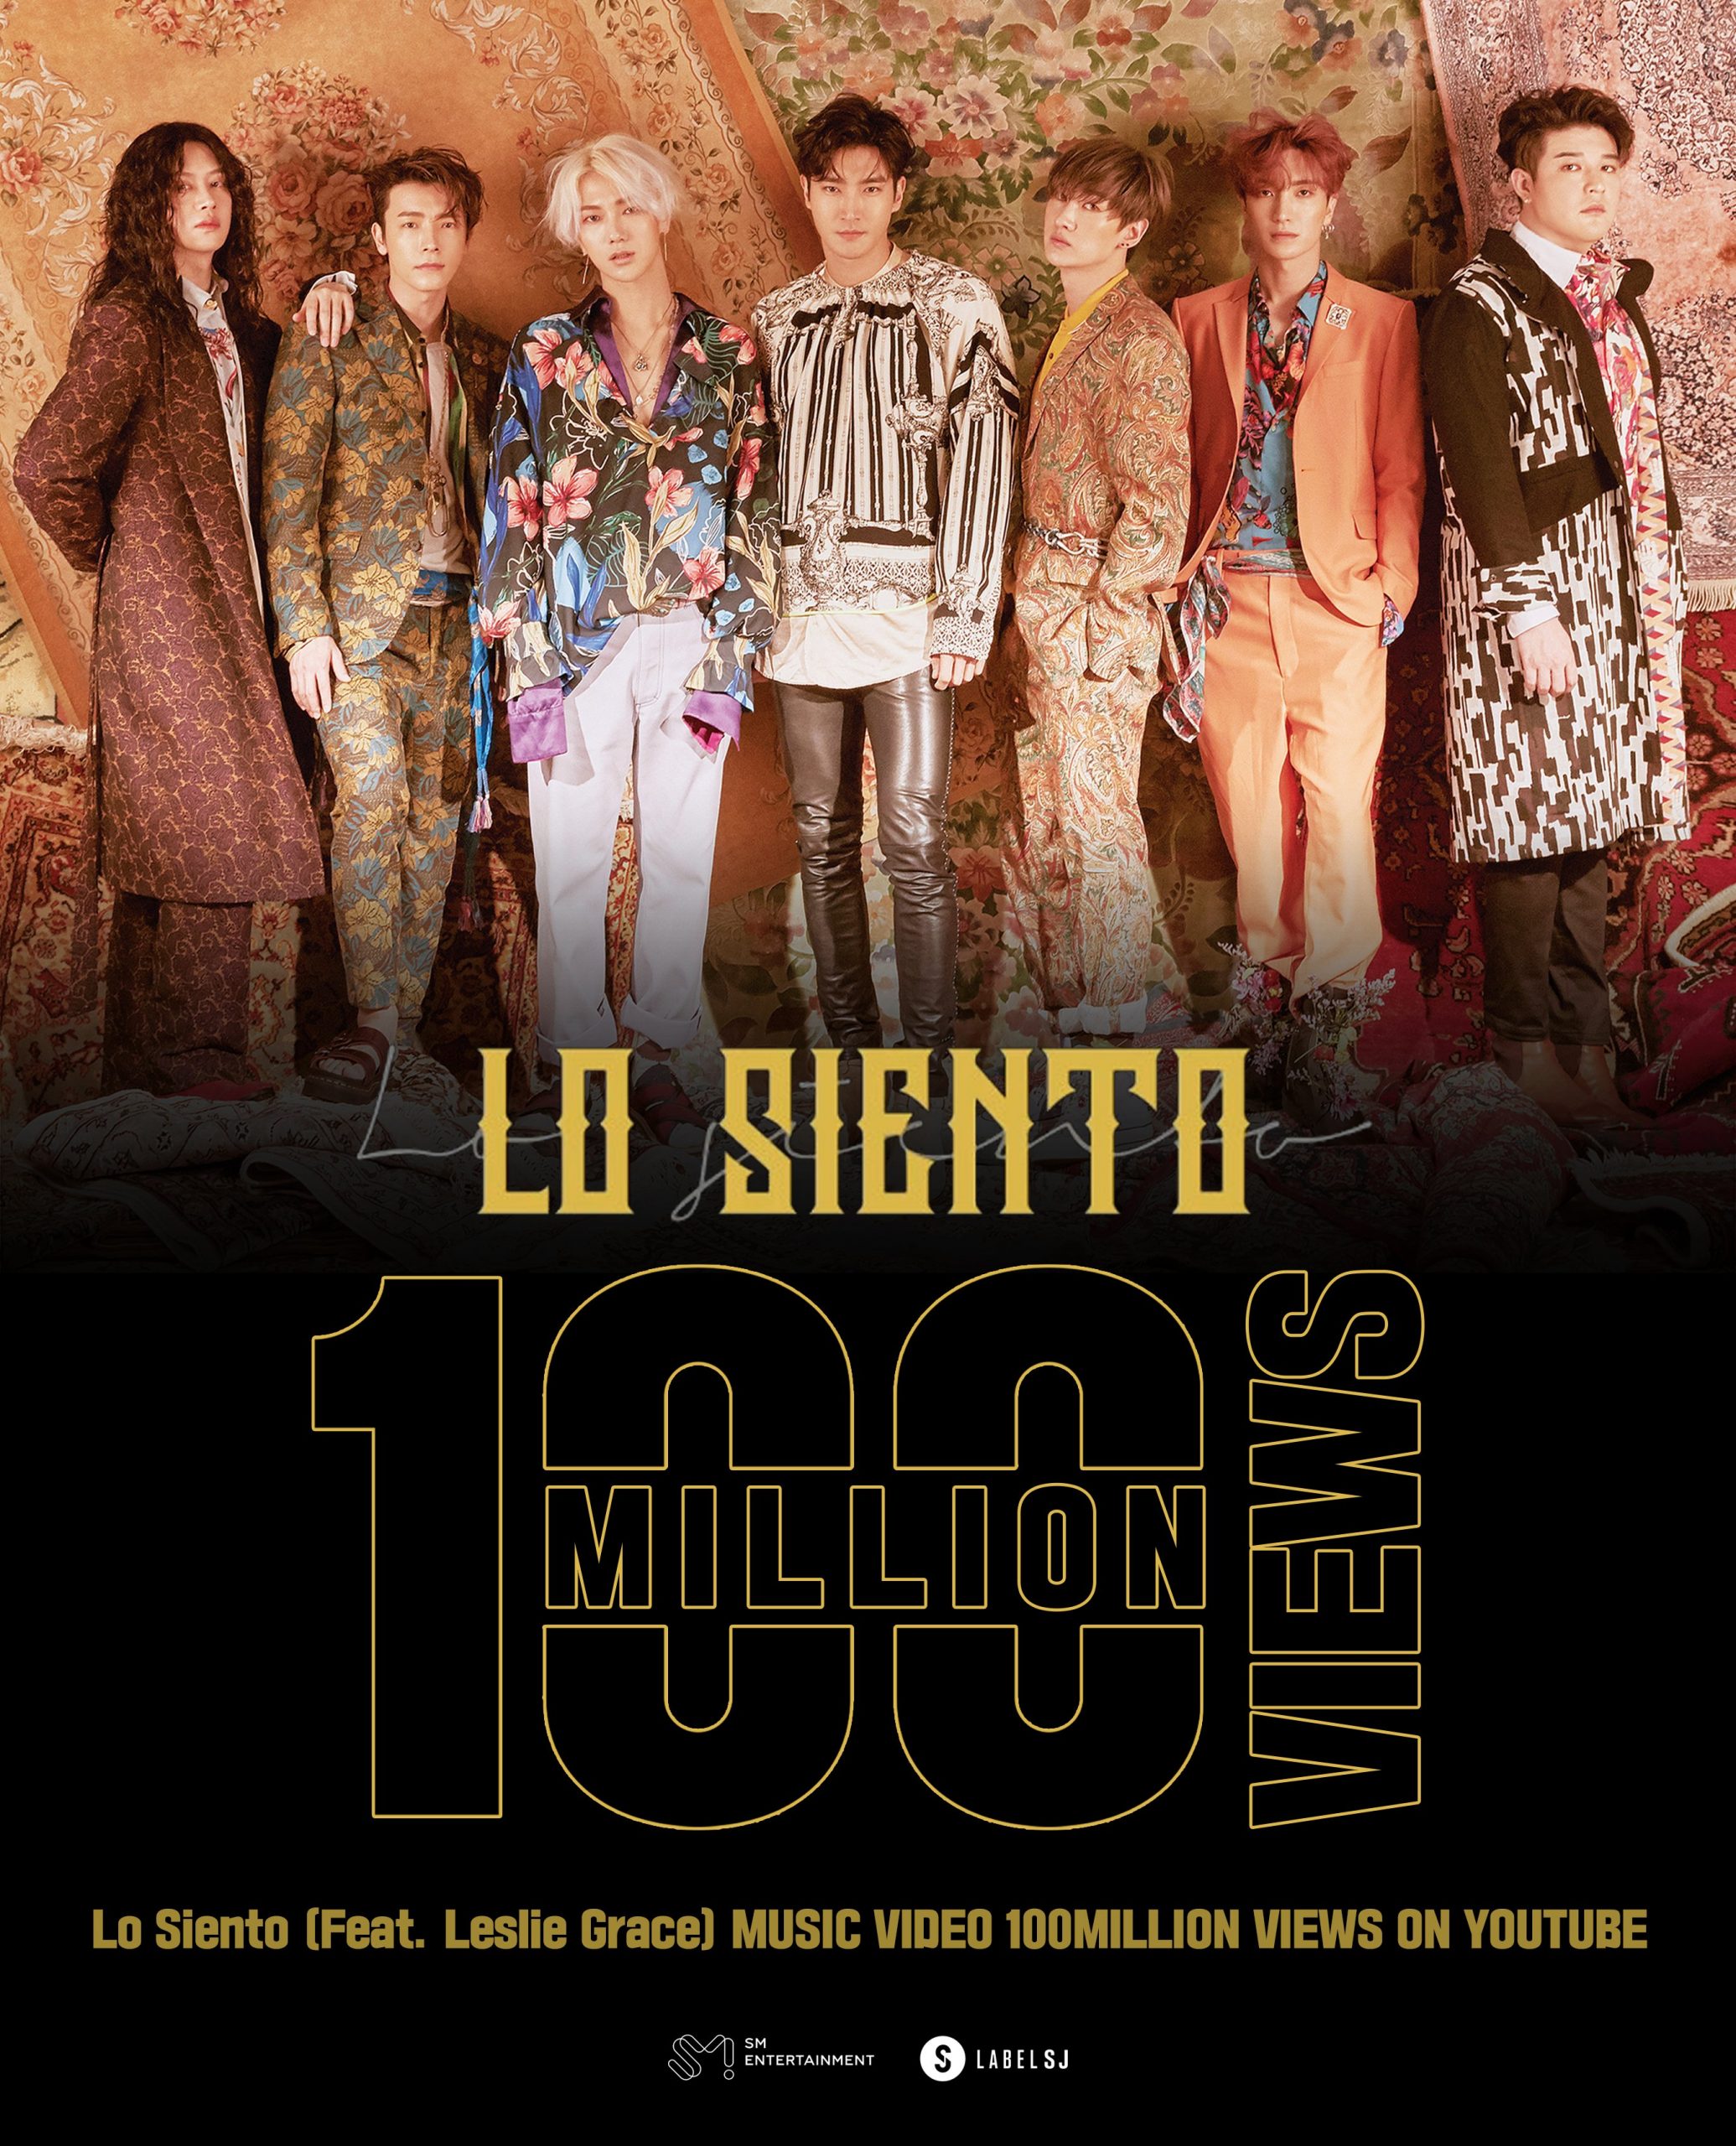 Песня Super Junior "Lo Siento" стала их 6-м видеоклипом, который набрал 100 миллионов просмотров